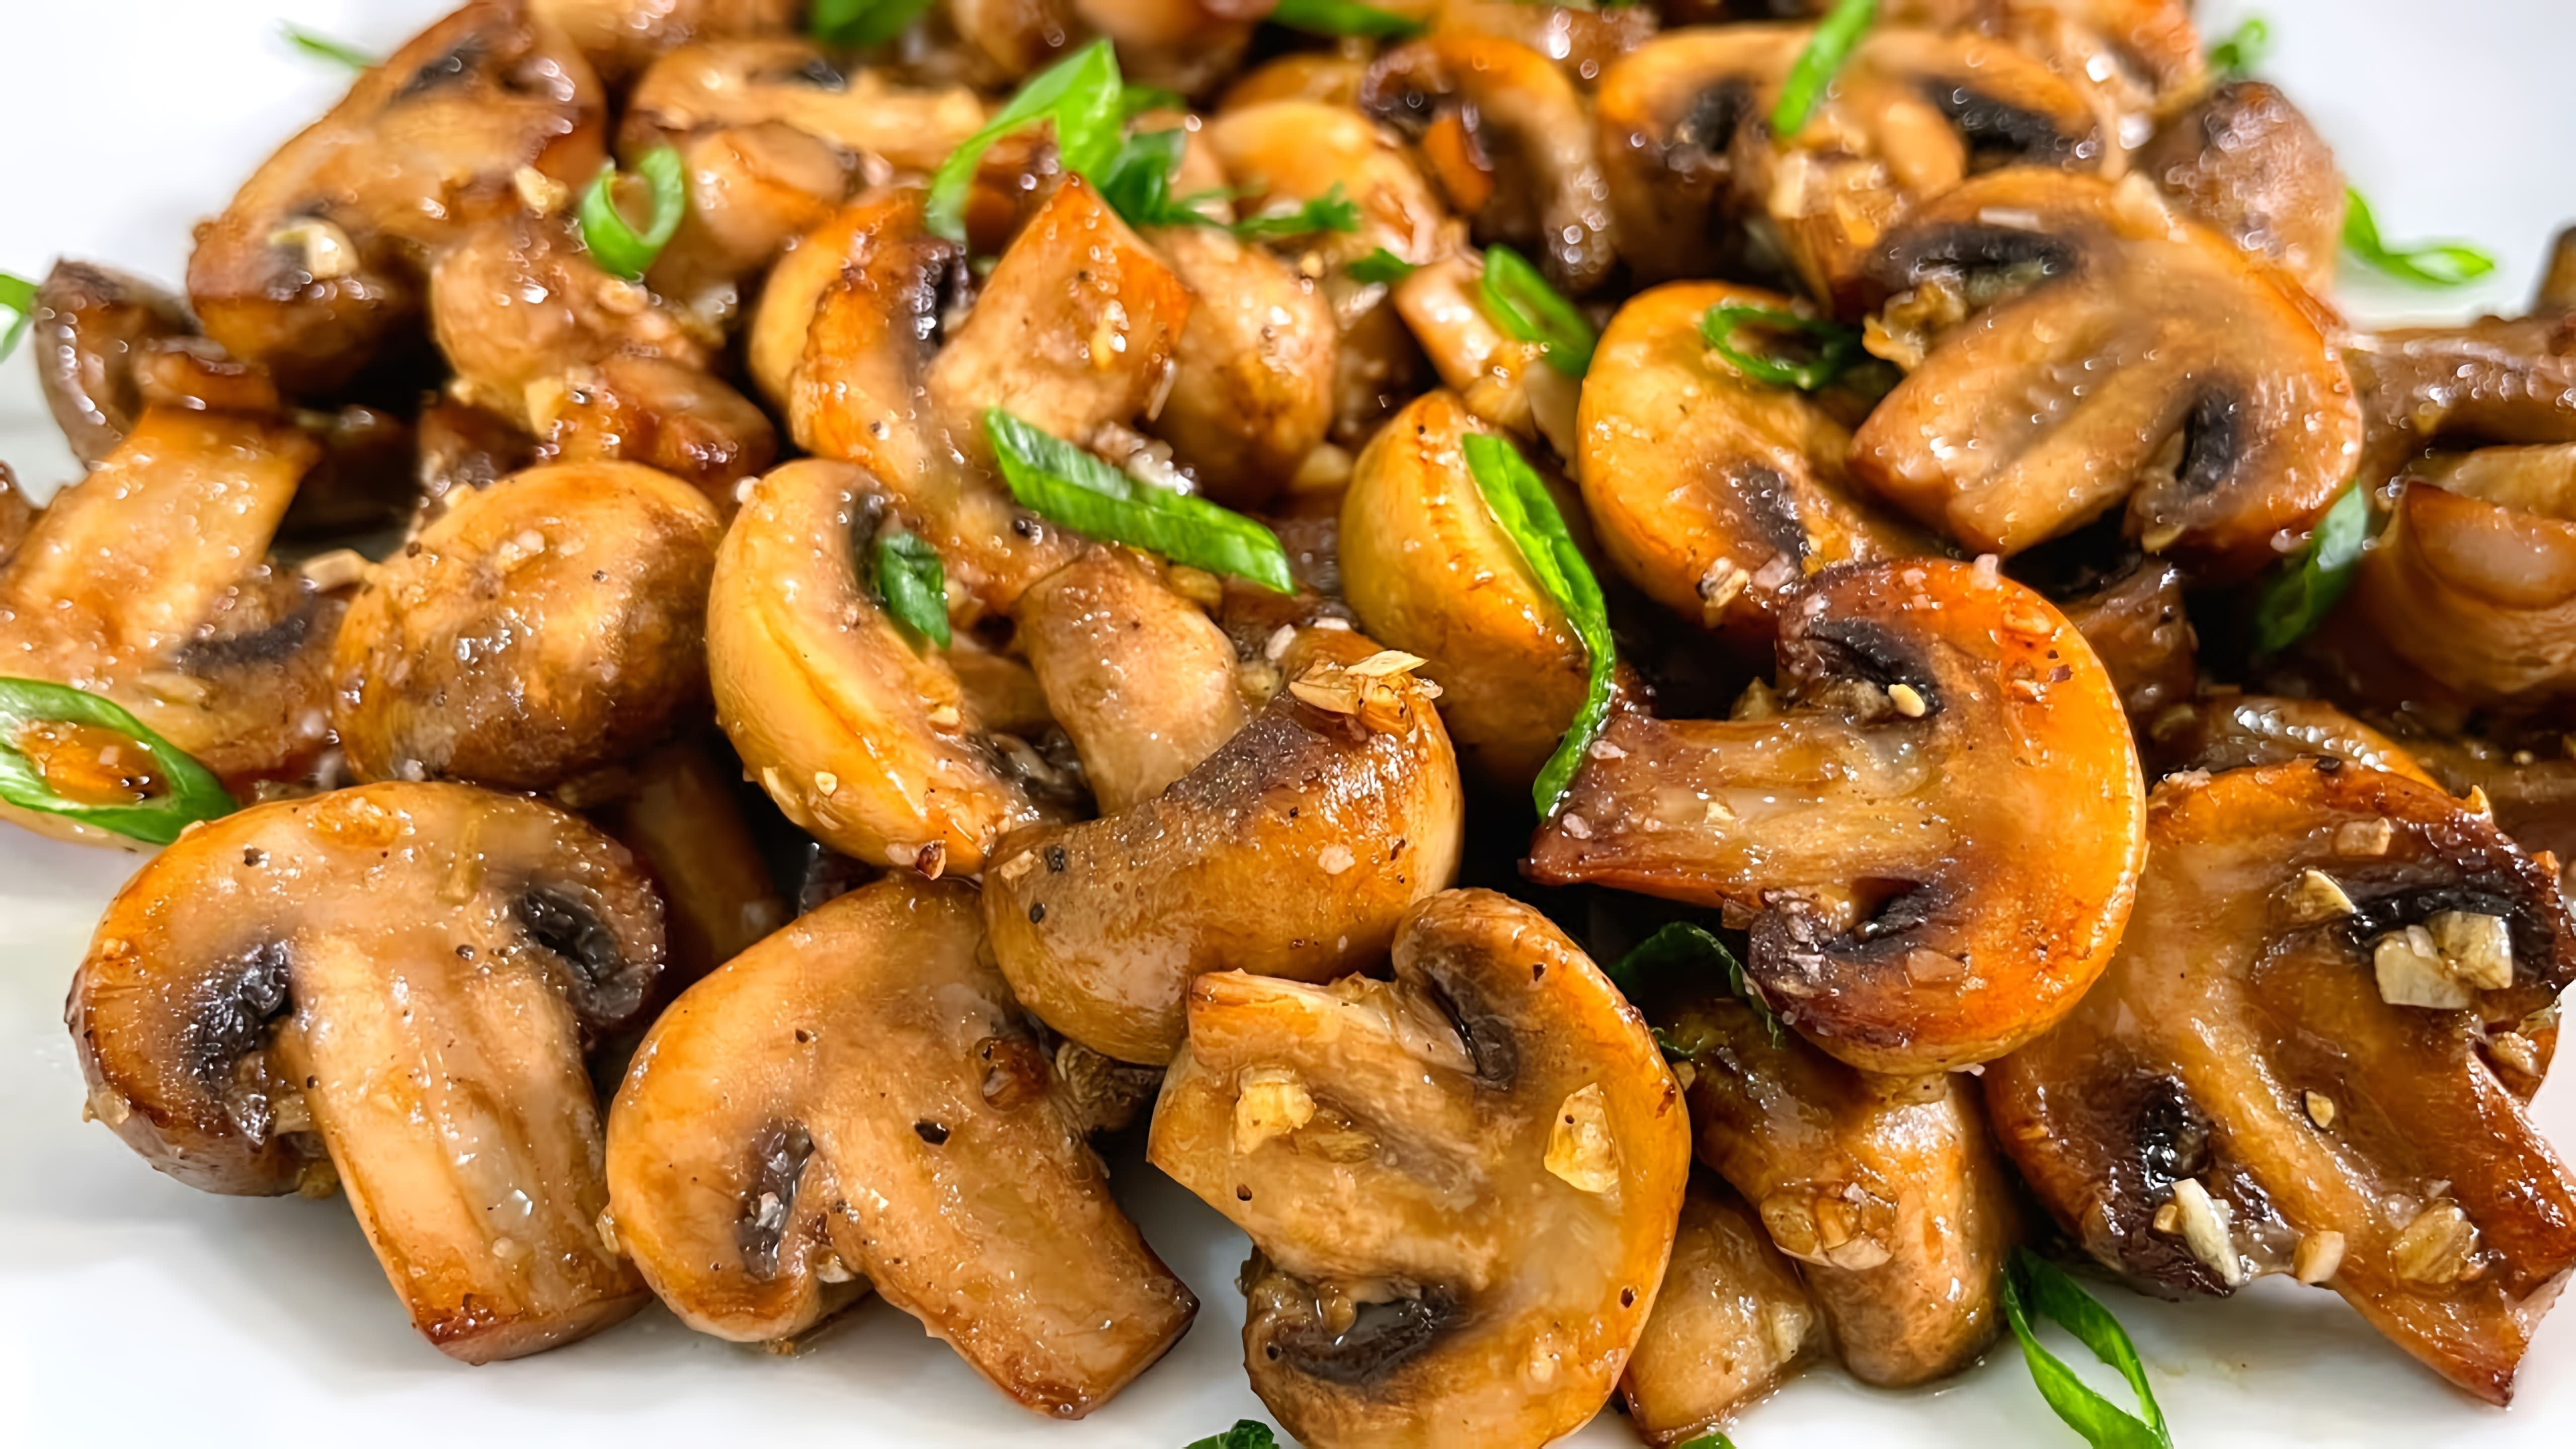 Видео рецепт приготовления грибов (шампиньоны) в ароматном и вкусном виде